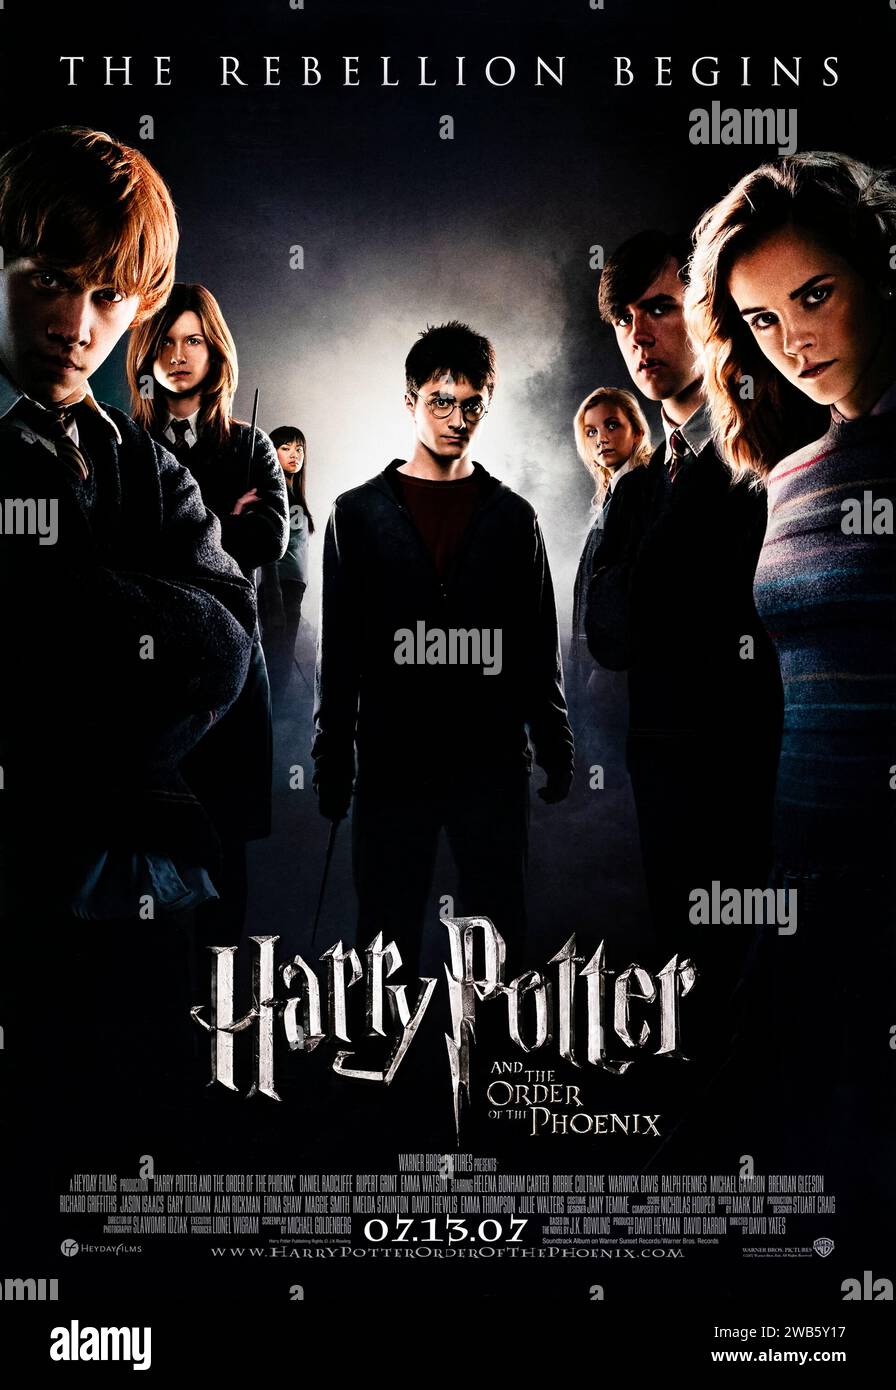 Harry Potter and the Order of the Phoenix (2007), diretto da David Yates e interpretato da Daniel Radcliffe, Emma Watson e Rupert Grint. Con il loro avvertimento sul ritorno di Lord Voldemort flagellato, Harry e Silente sono presi di mira dalle autorità del Mago mentre un burocrate autoritario prende lentamente il potere a Hogwarts. Poster dell'anticipo DEGLI STATI UNITI. ***SOLO USO EDITORIALE*** credito: BFA / Warner Bros Foto Stock